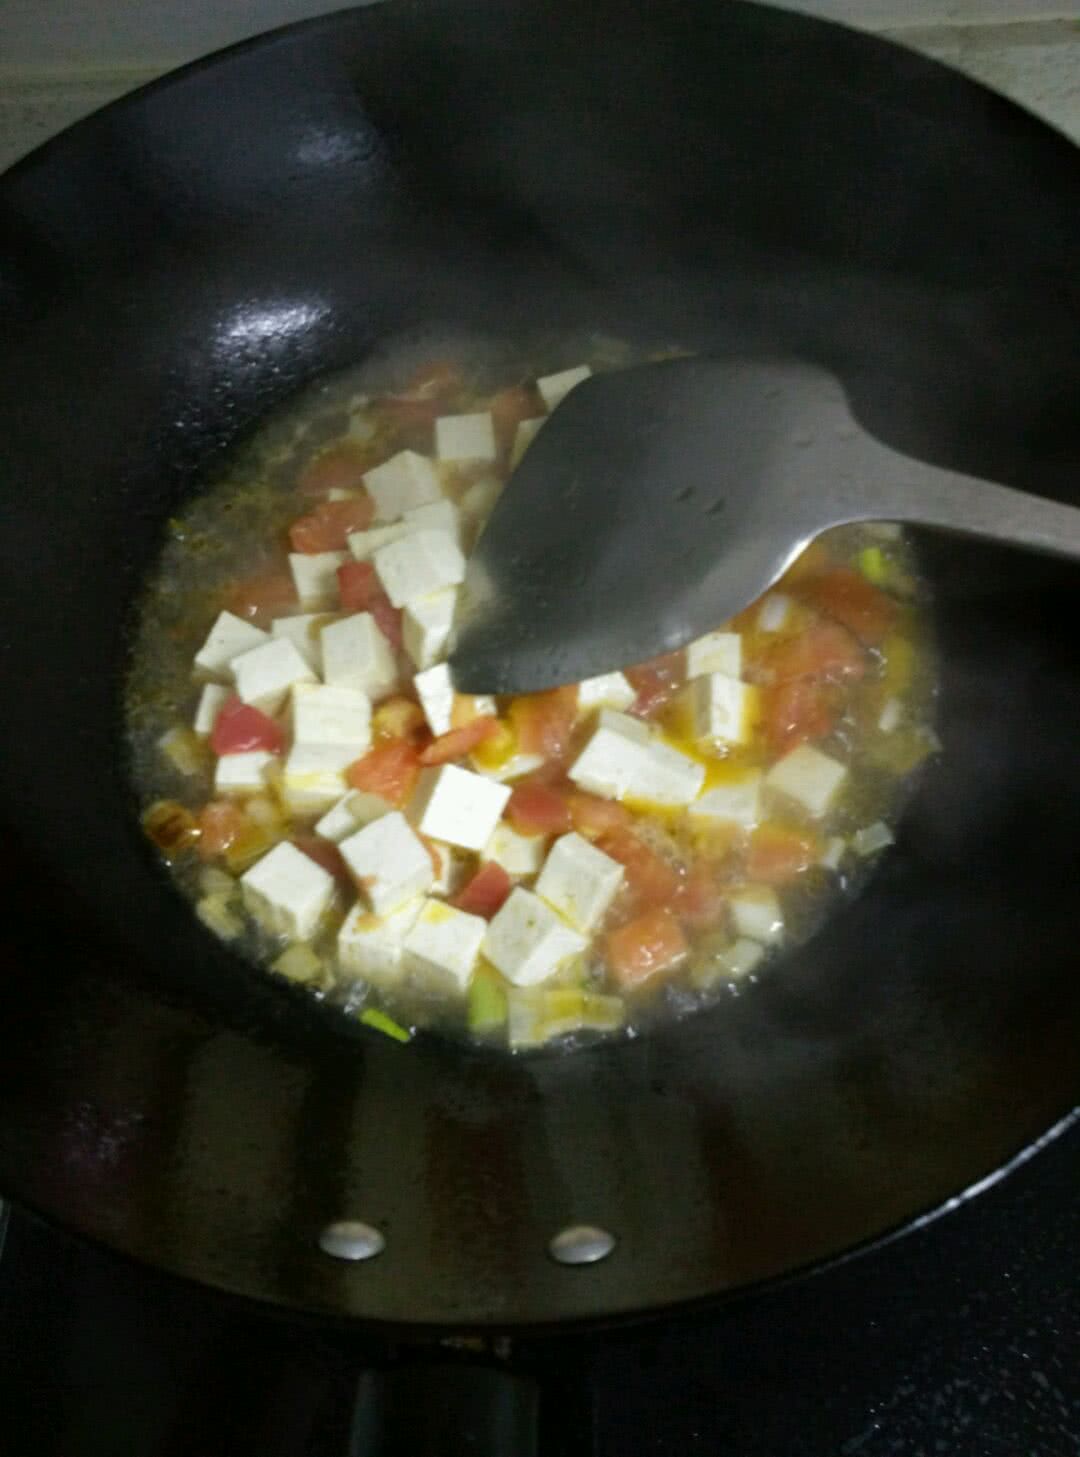 西红柿蛋汤的做法_【图解】西红柿蛋汤怎么做如何做好吃_西红柿蛋汤家常做法大全_忽略_豆果美食